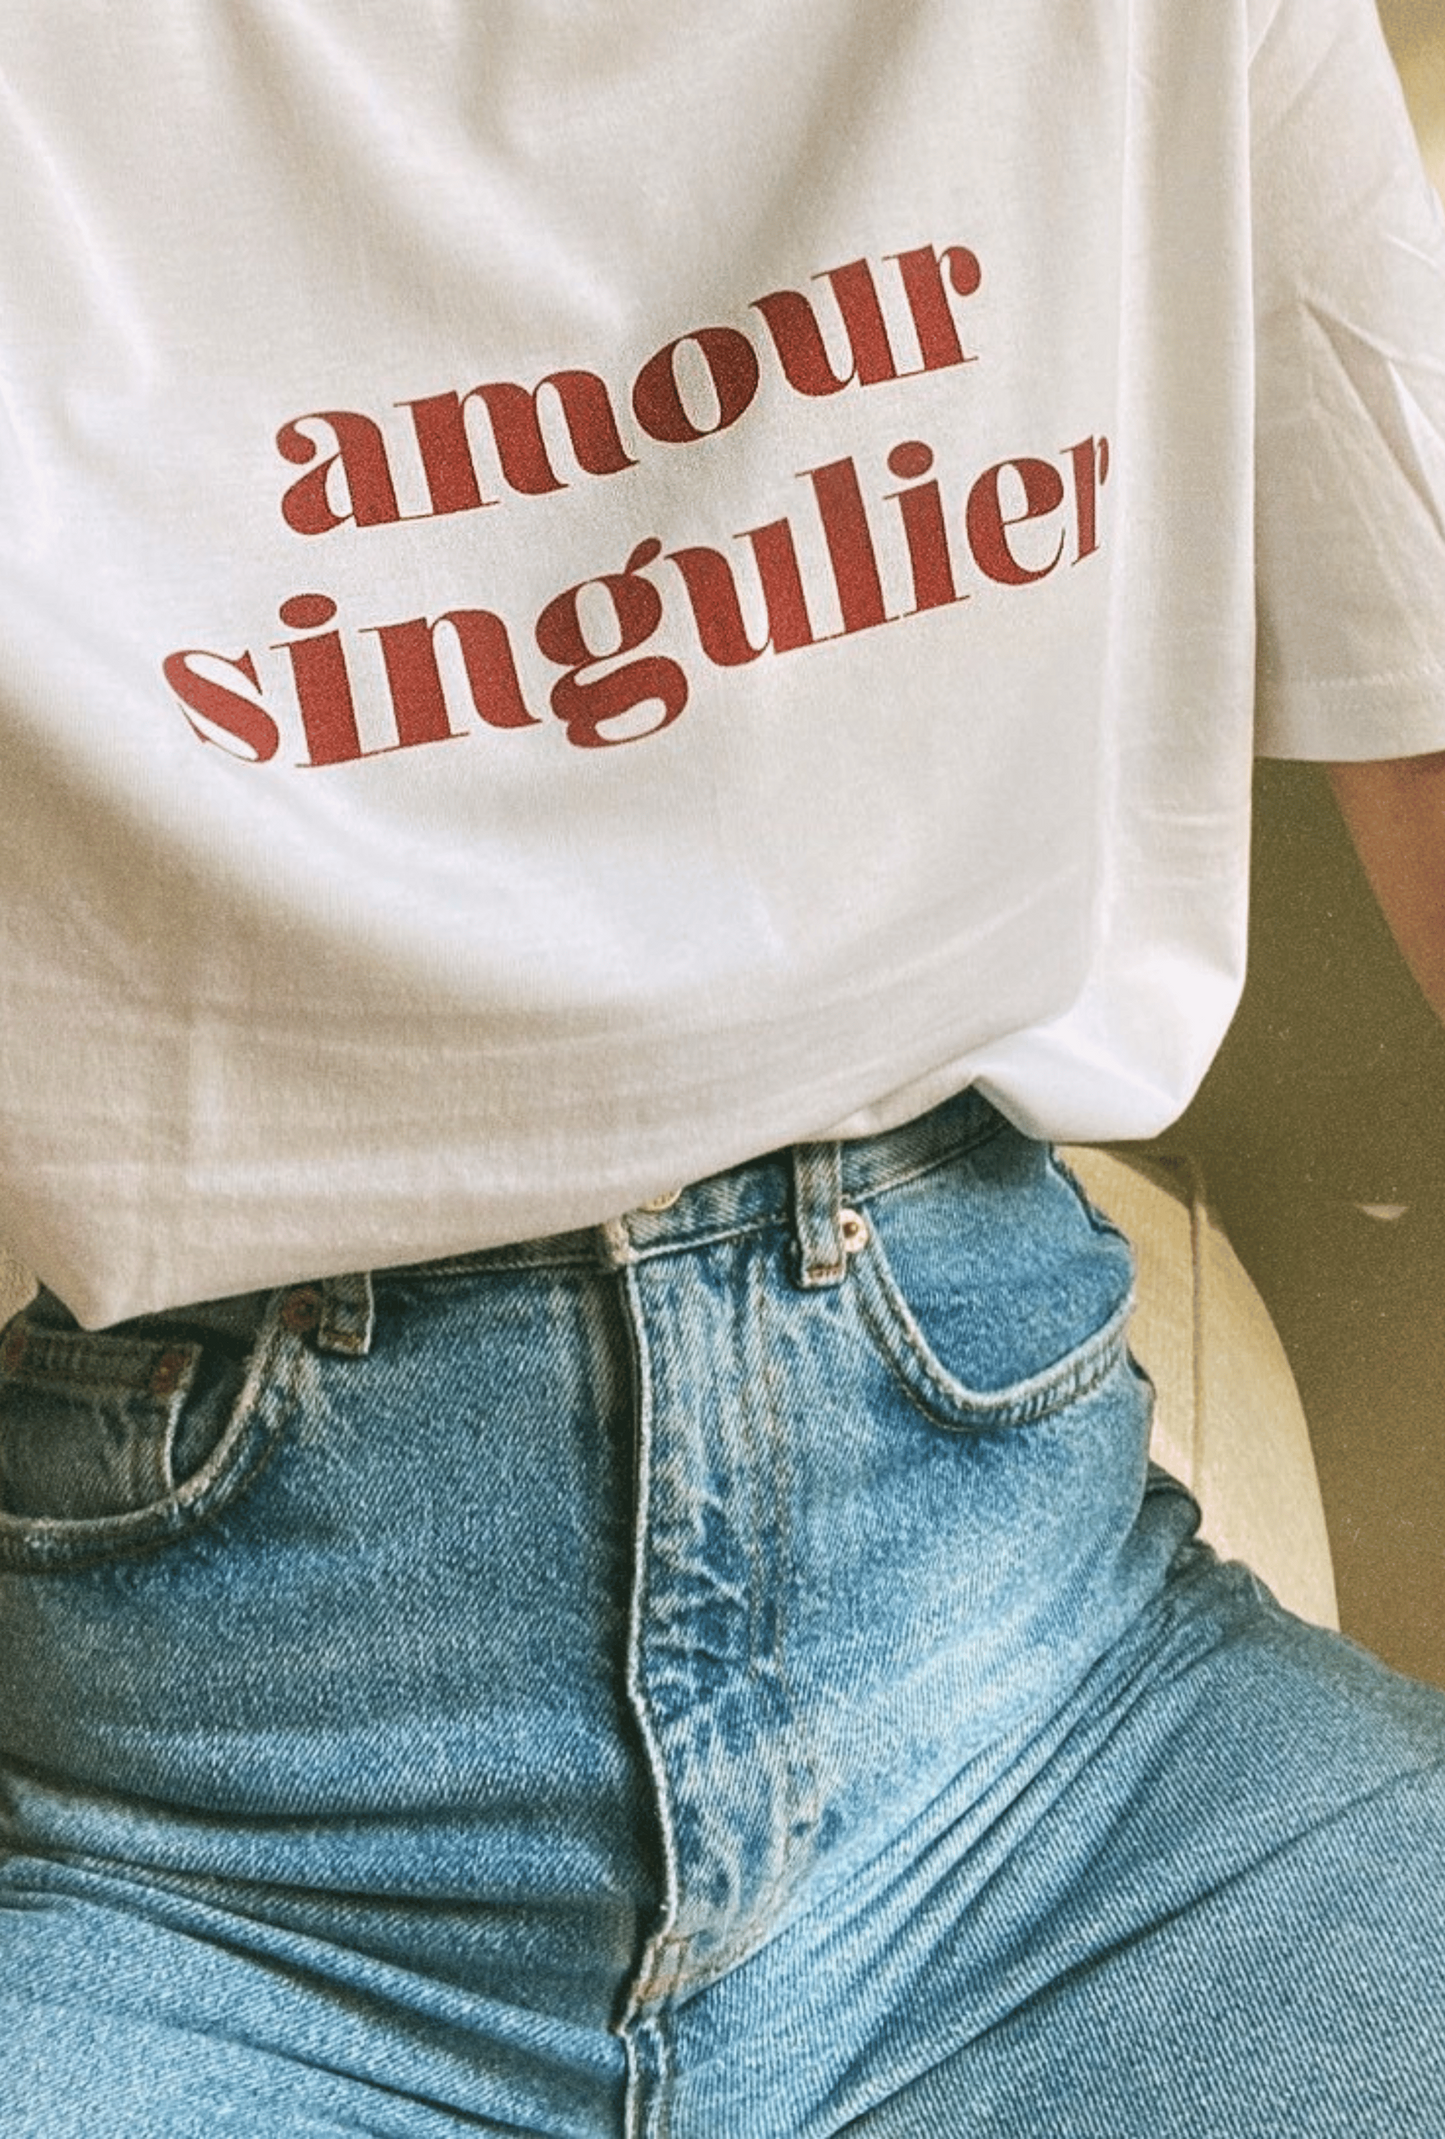 T-shirt - Singular Love